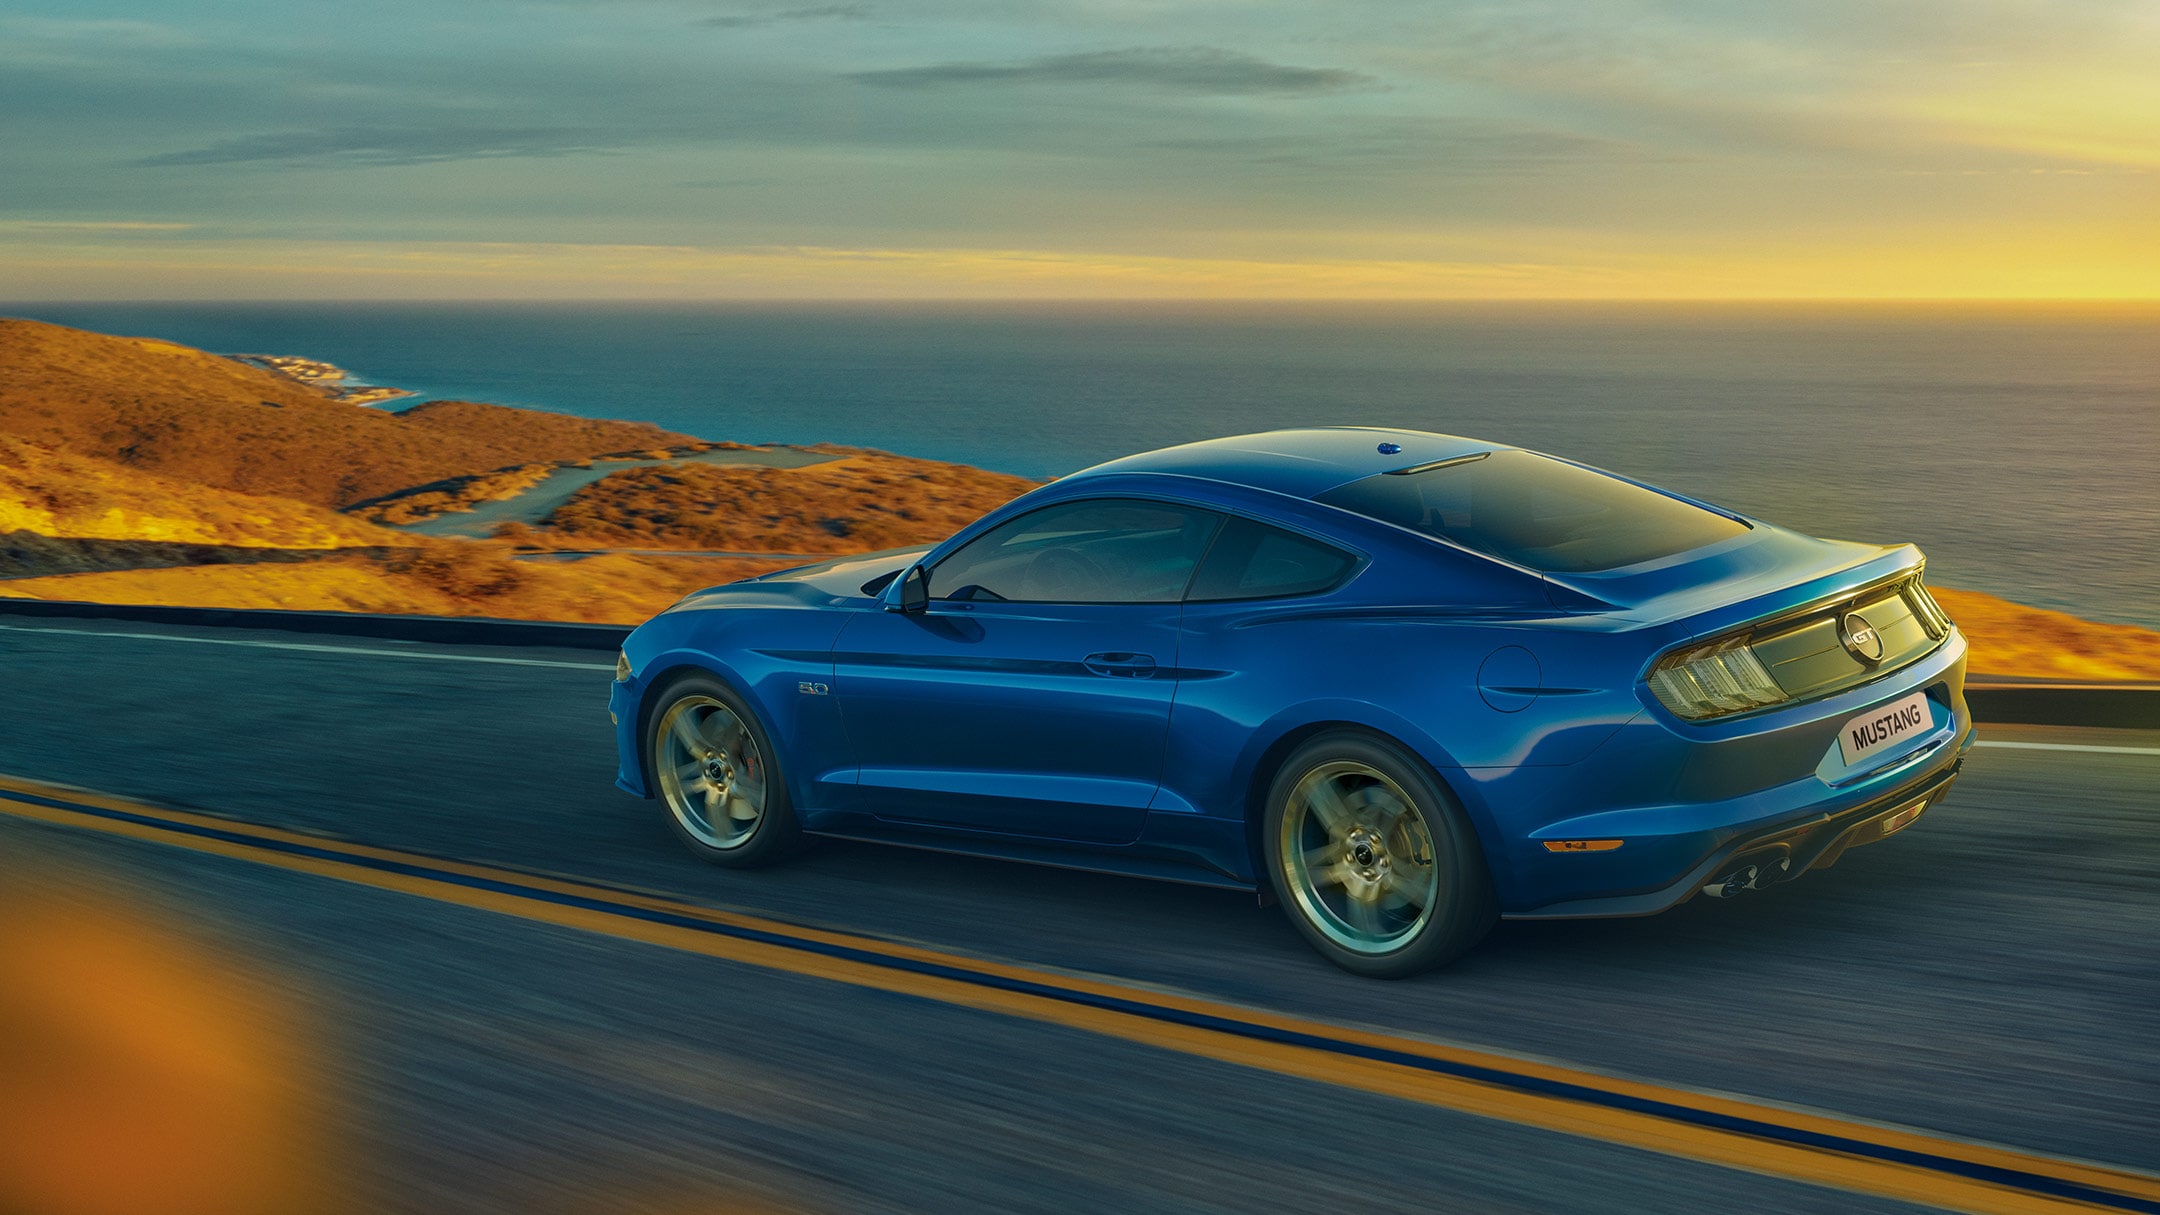 Blauwe Mustang rijdt op de weg